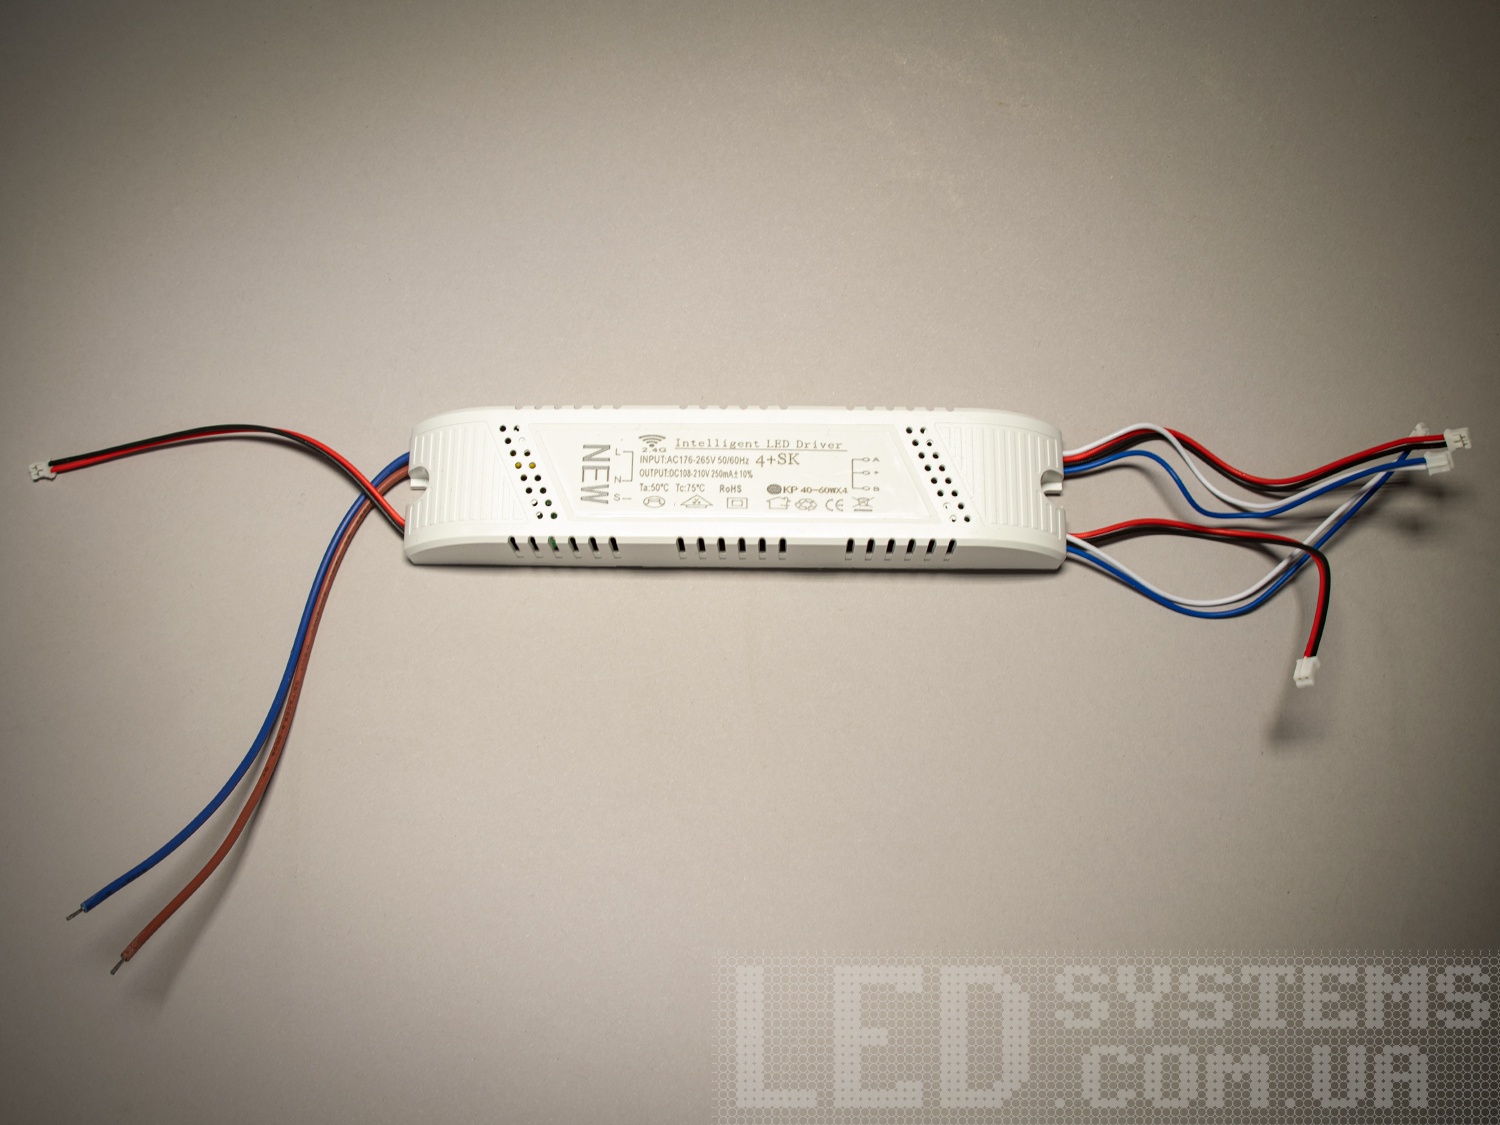 Універсальний комплект для переобладнання світлодіодних люстр.
Блок приймача пульта встановлюється місце рідного блоку живлення світлодіодної люстри. Цей комплект може бути використаний на люстрах з робочим струмом світлодіодних модулів від 210 до 300 мА. Діммер має 4 вихідні канали для підключення до стандартної світлодіодної люстри, схема підключення 